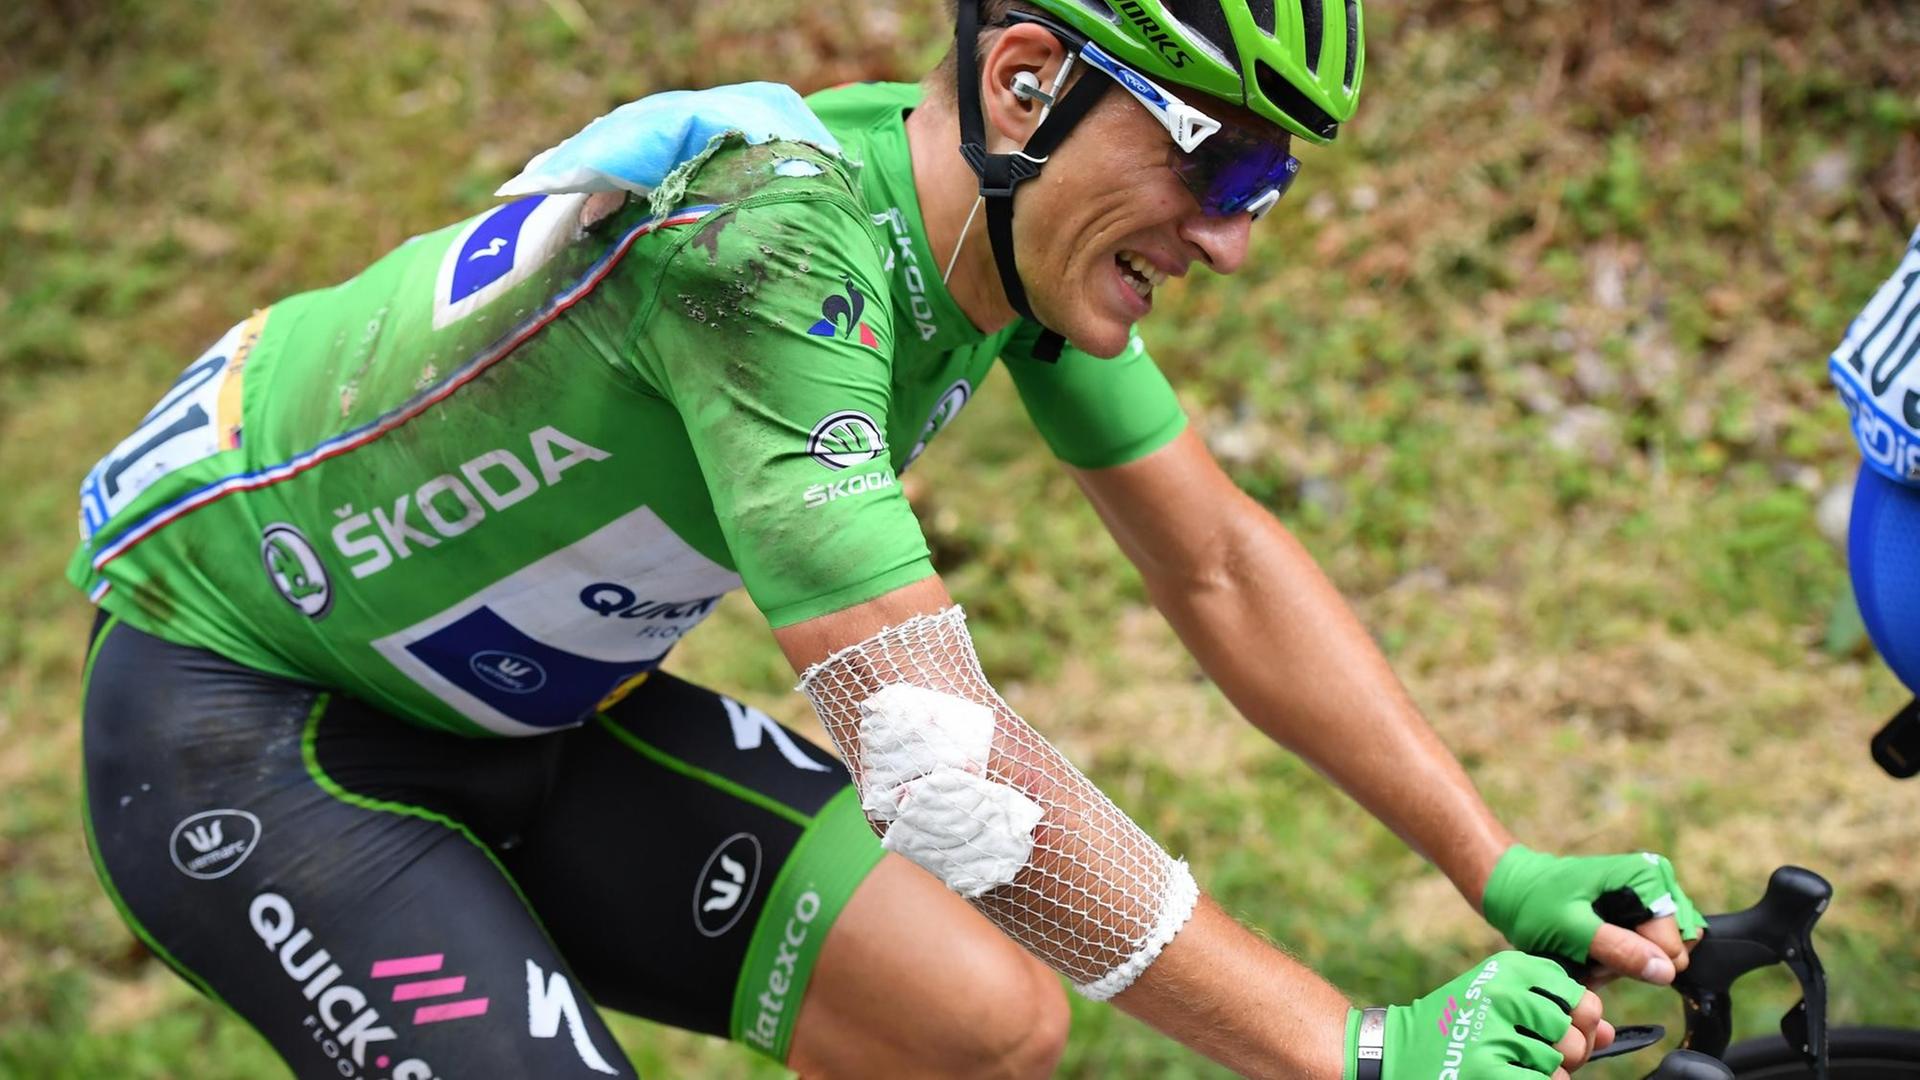 Der deutsche Radfahrer Marcel Kittel fährt nach seinem Sturz bei der Tour de France ersz einmal weiter. Sein Gesicht ist schmerzverzerrt und sein Ellenbogen bandagiert.